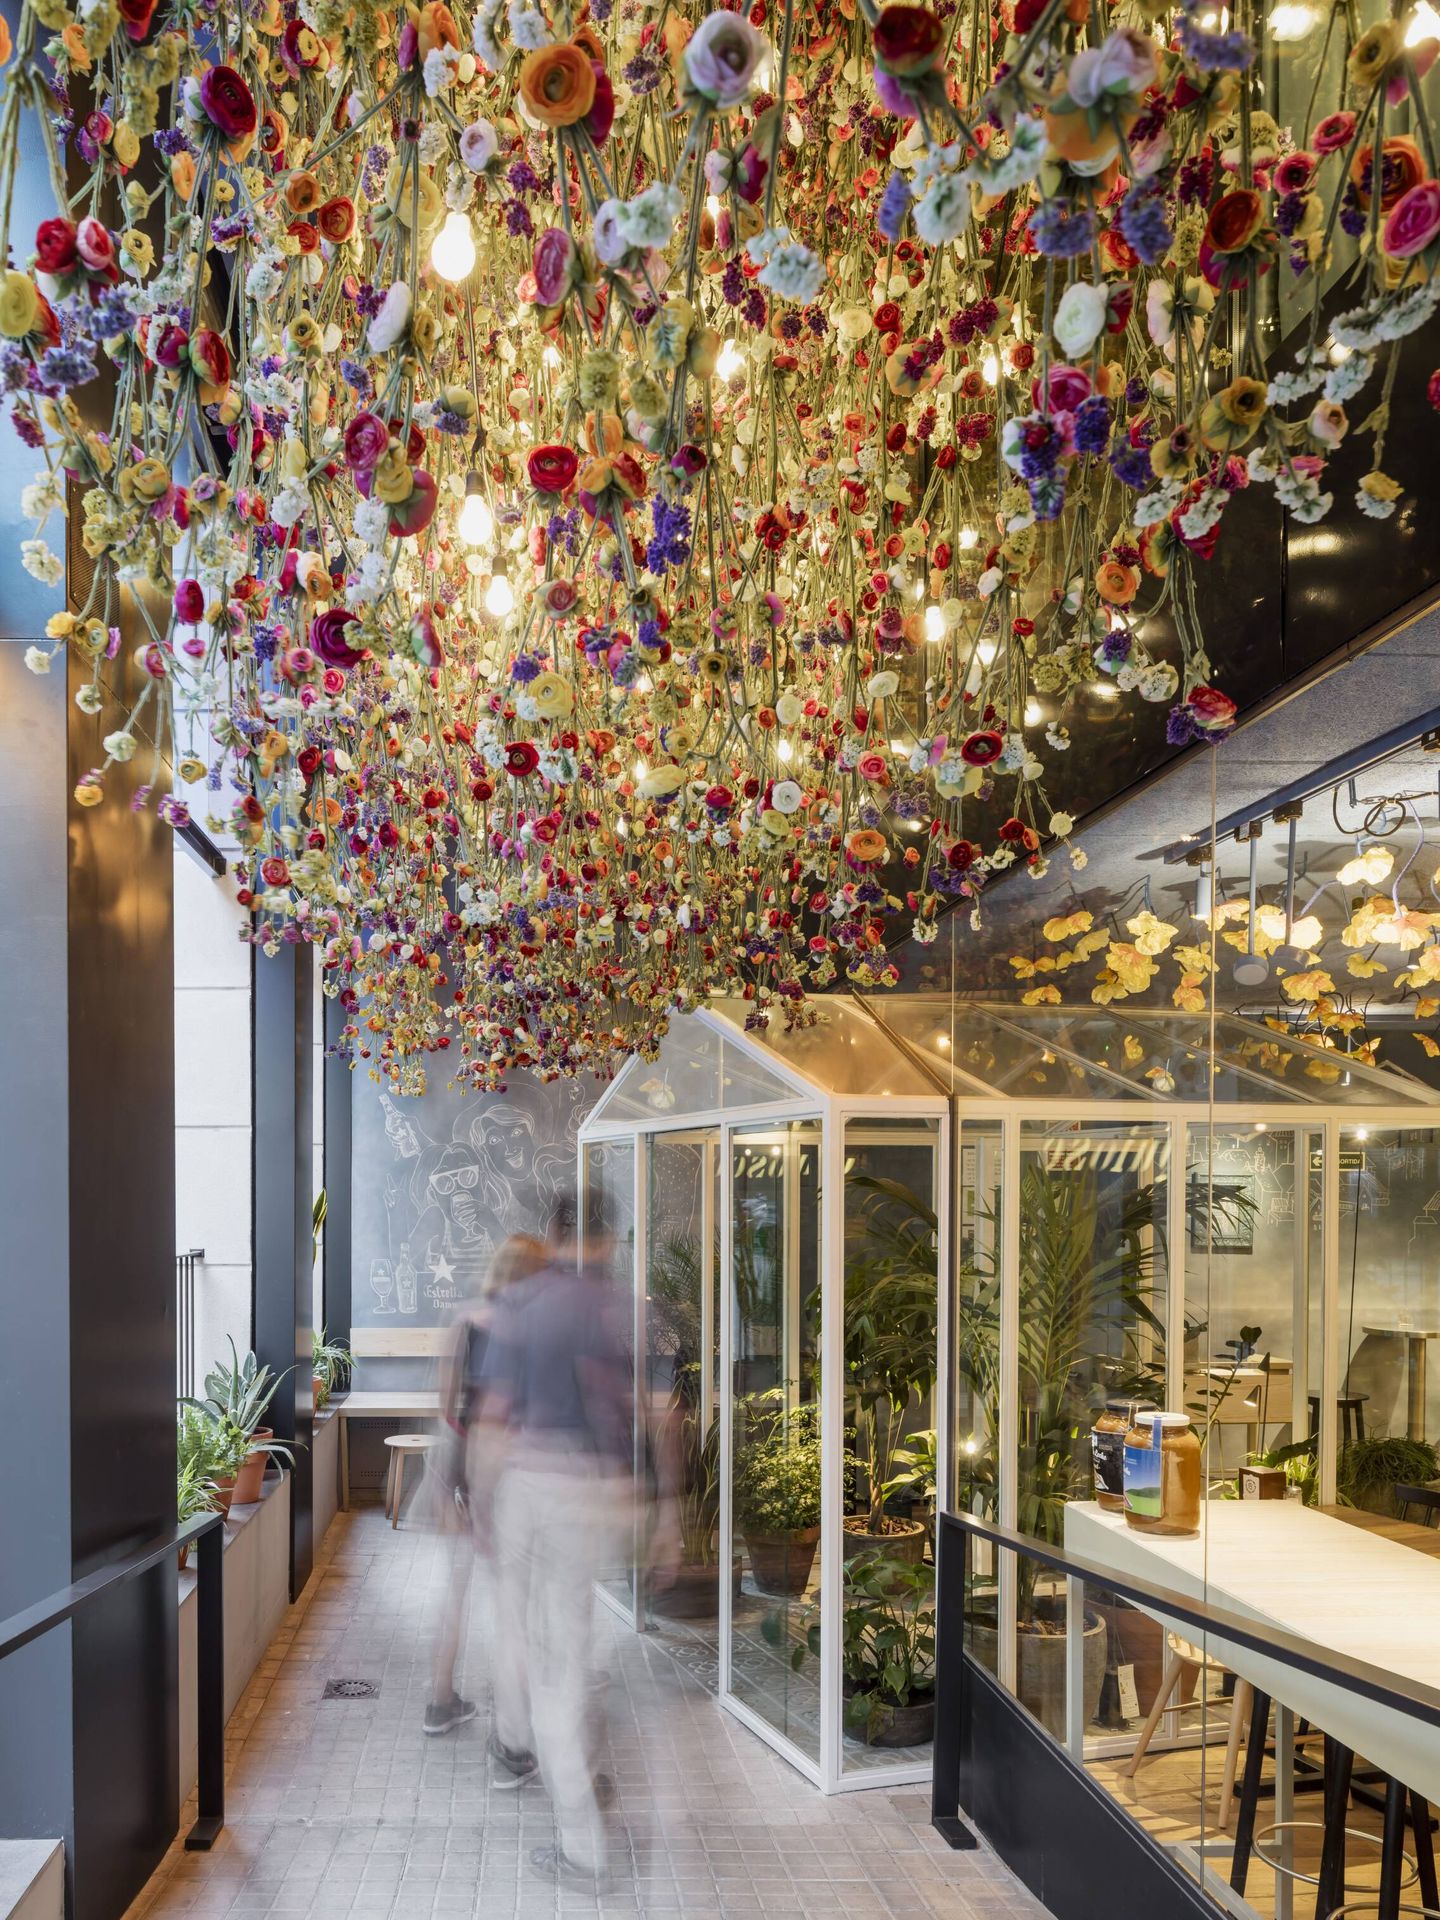 El techo de luces y flores del restaurante Bellavista de Barcelona. (Cortesía)